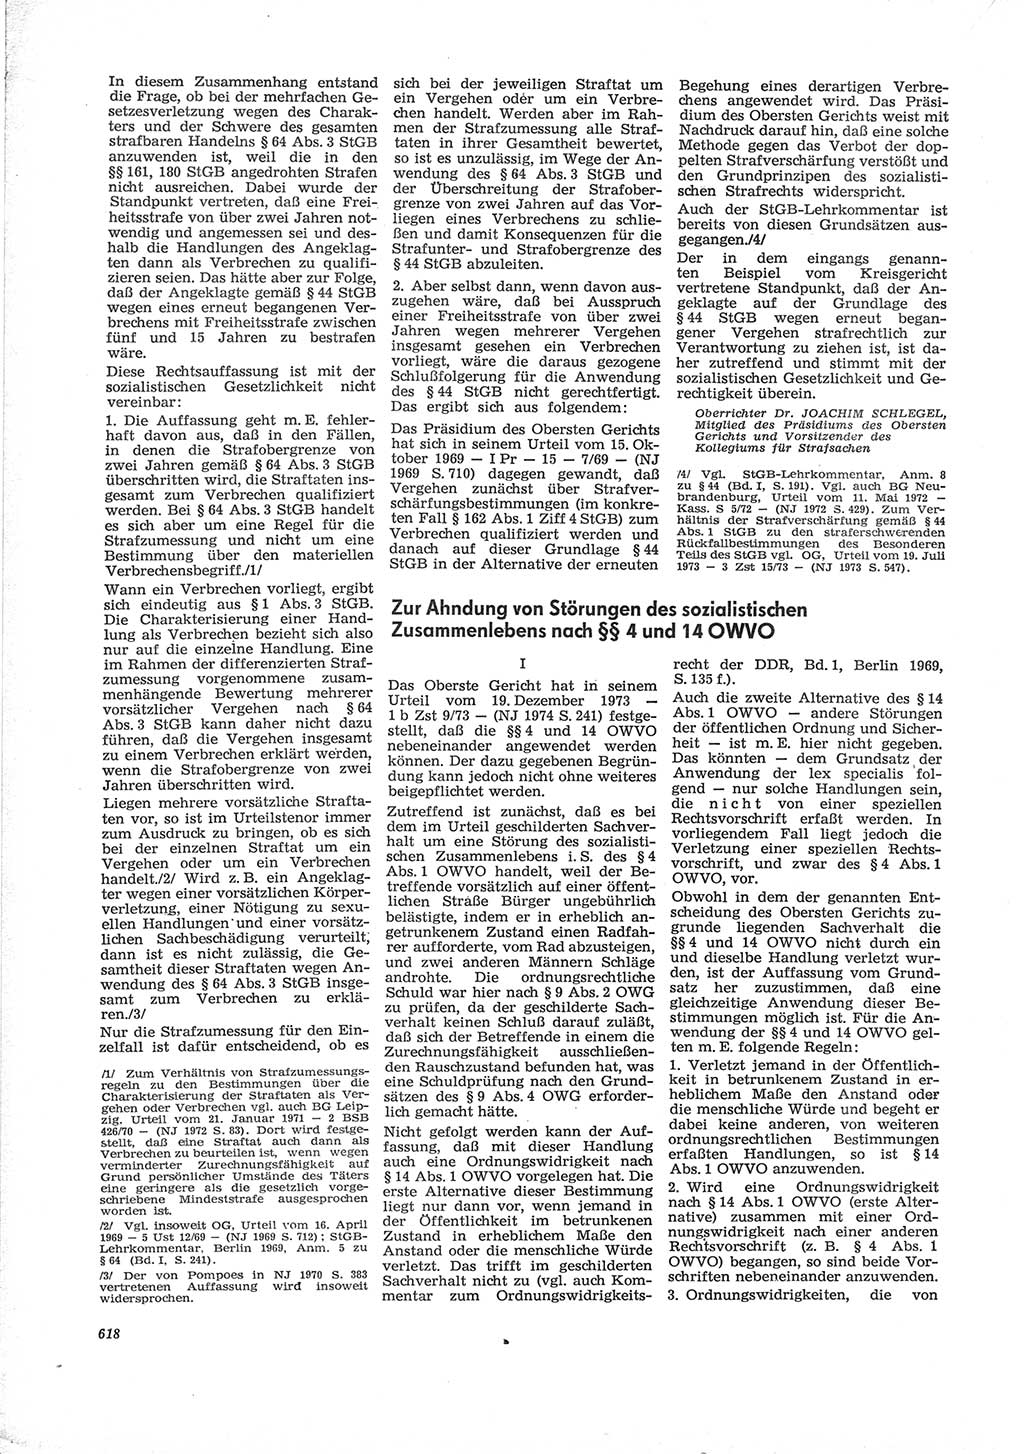 Neue Justiz (NJ), Zeitschrift für Recht und Rechtswissenschaft [Deutsche Demokratische Republik (DDR)], 28. Jahrgang 1974, Seite 618 (NJ DDR 1974, S. 618)